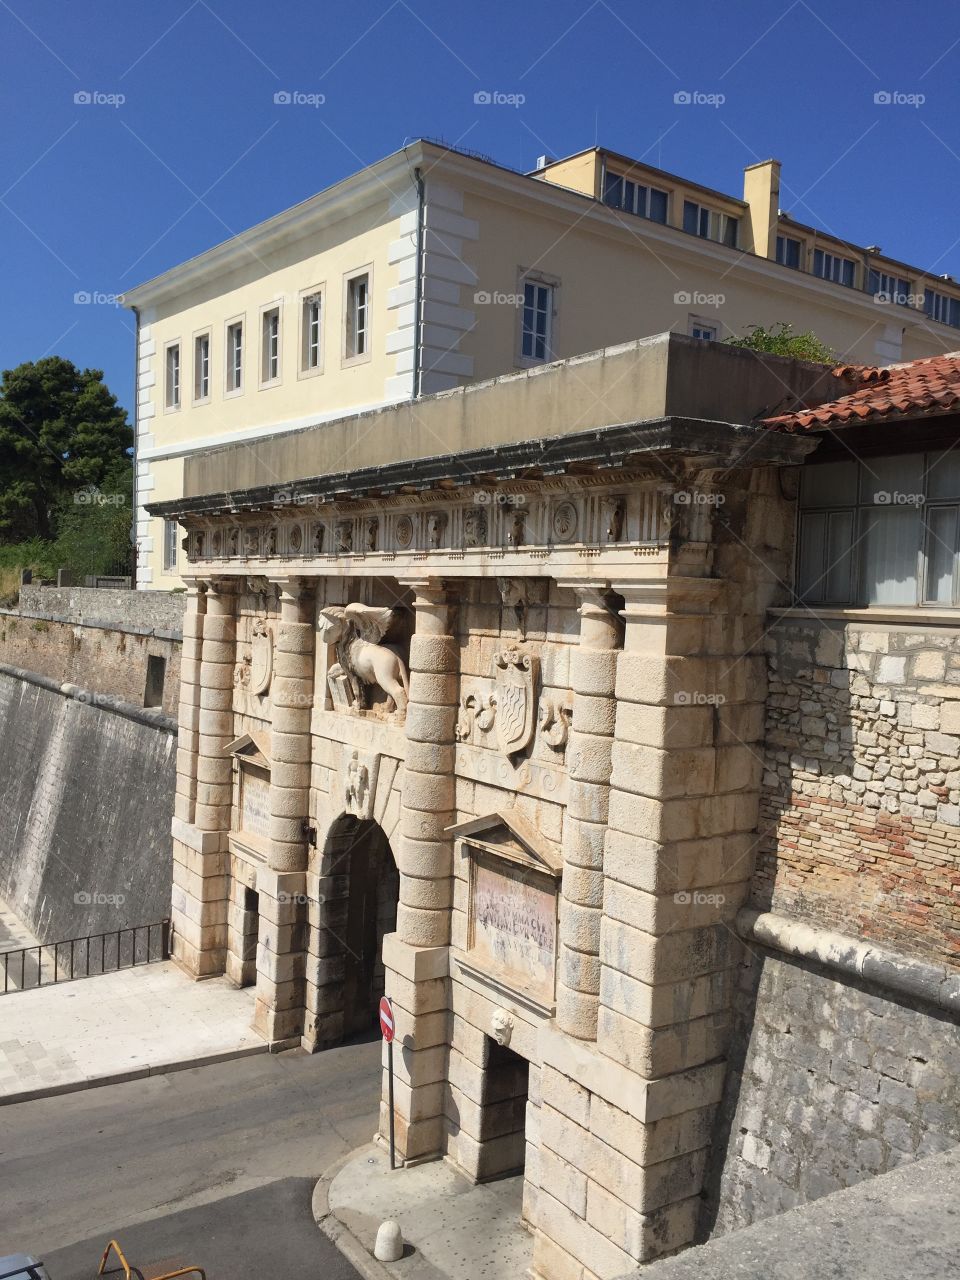 Kopnena vrata (Land gate) in Zadar